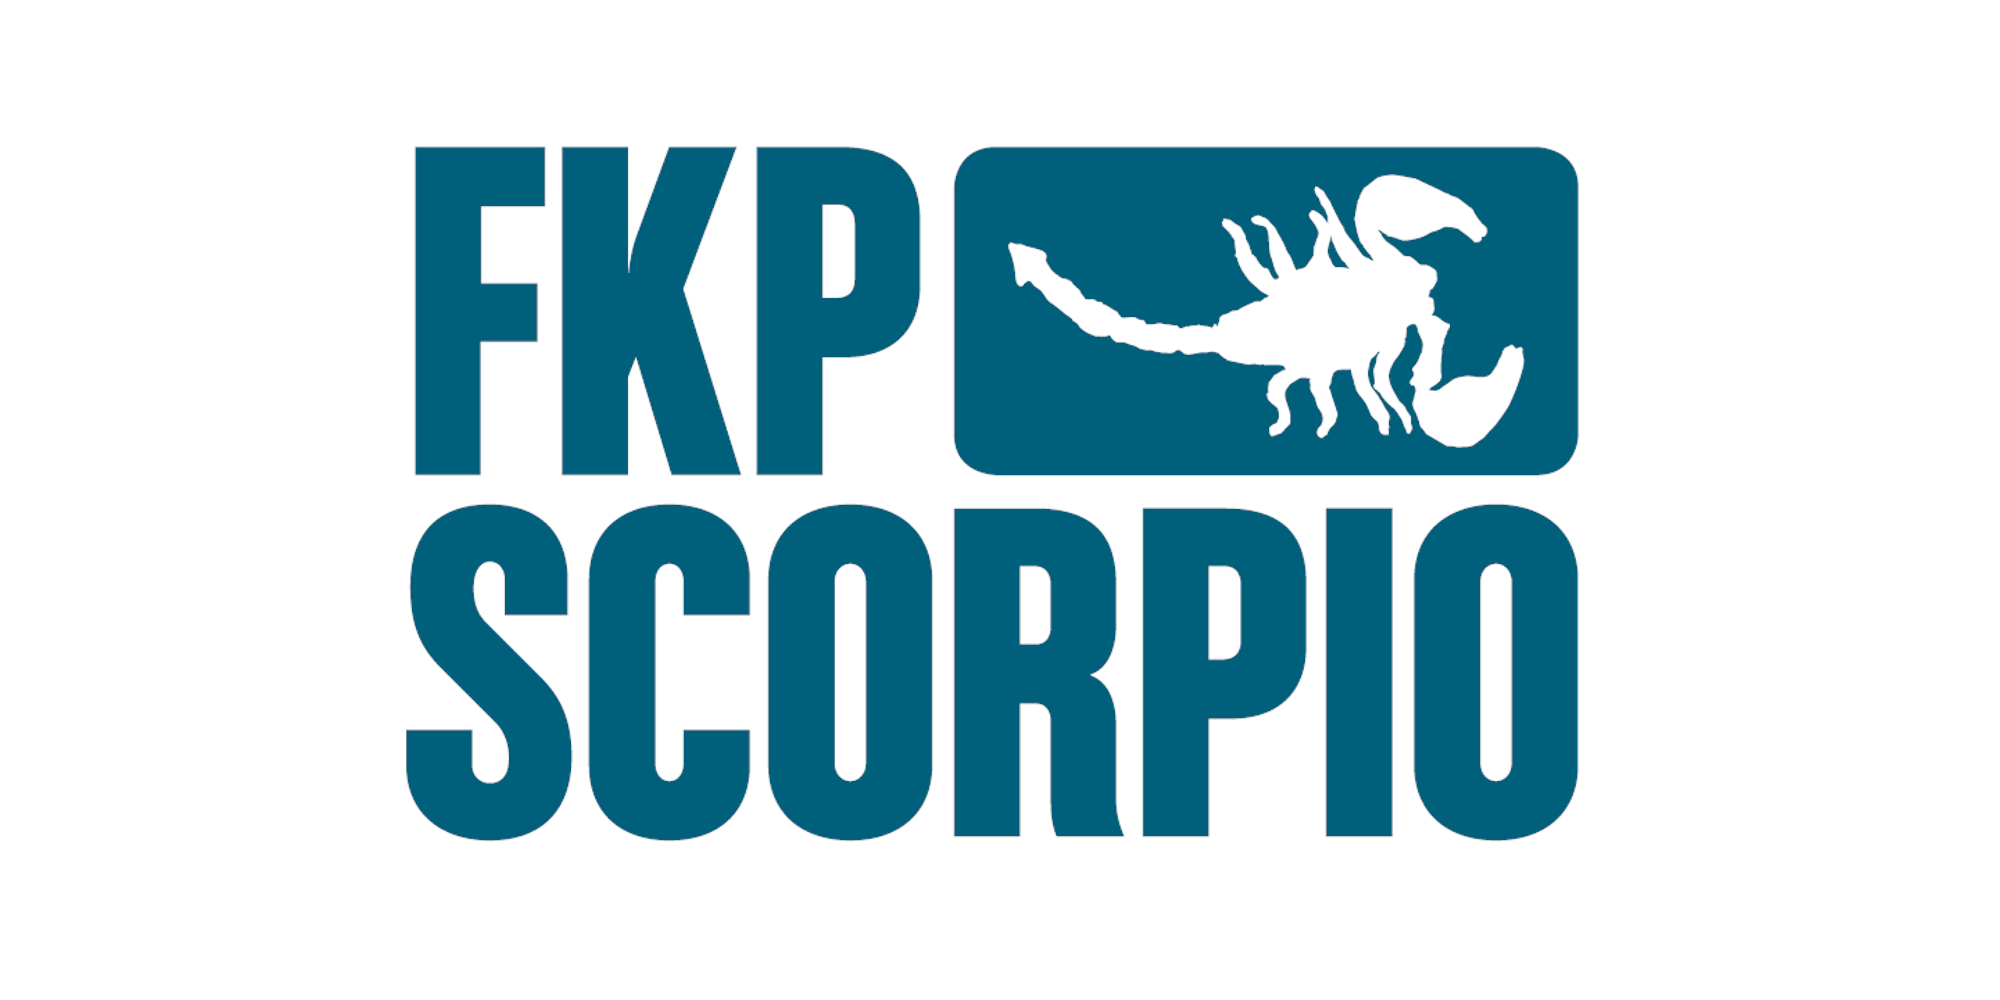 FKP_Scorpio